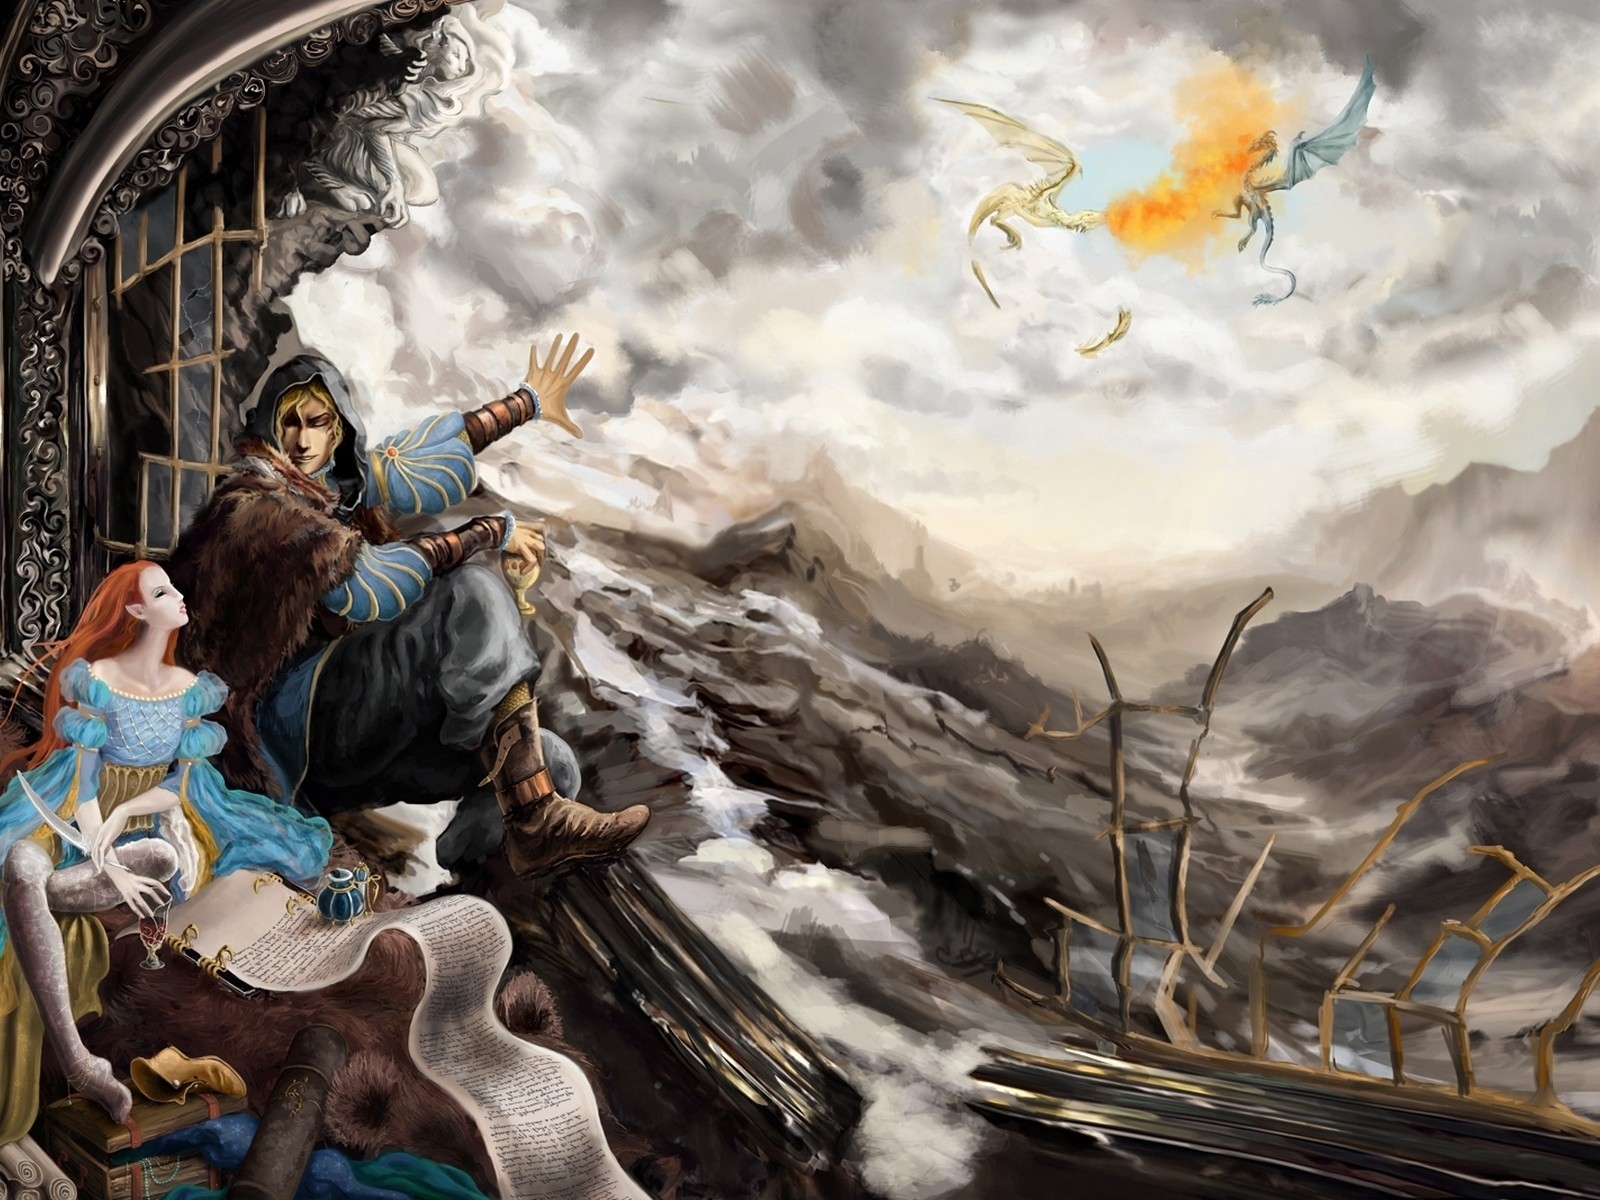 The Elder Scrolls V Skyrim Poster for 1600 x 1200 resolution